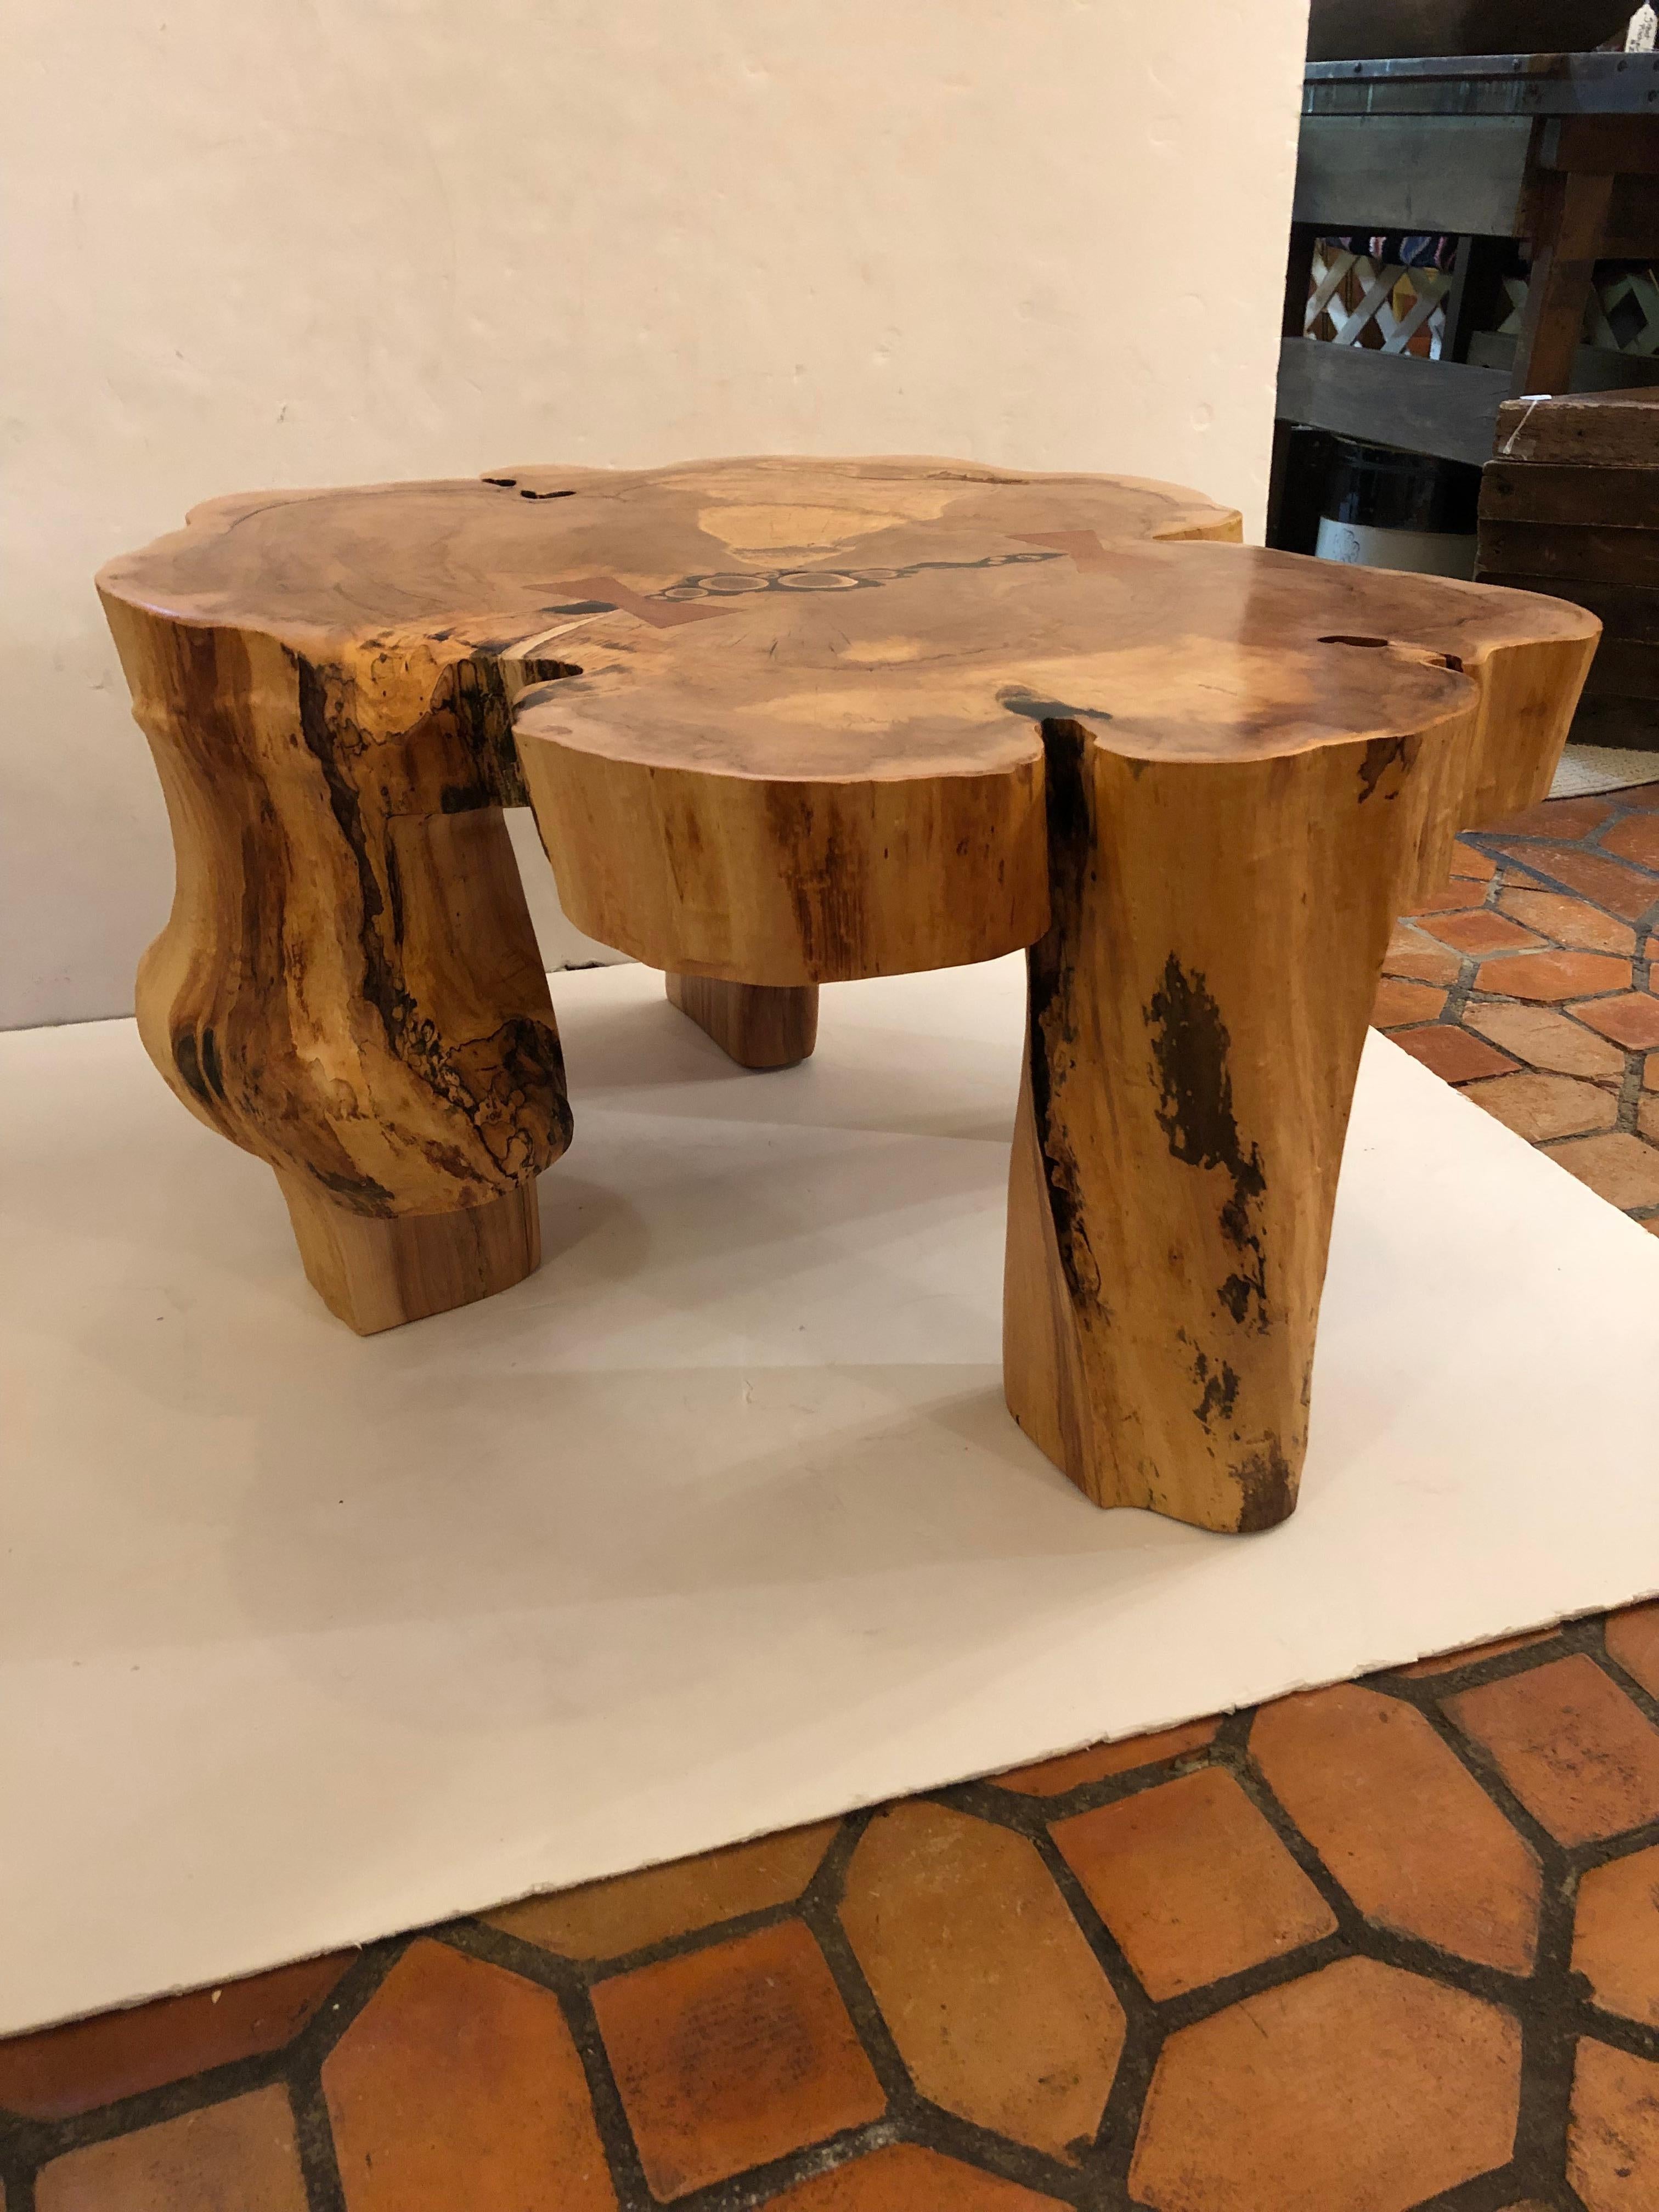 Une œuvre d'art réalisée à la main par John Braun, un travailleur du bois de NJ. Cette table basse moderne et organique en forme d'amibe est fabriquée à partir de la base d'un érable récupéré dans le jardin de l'artiste. Ce long processus comprend